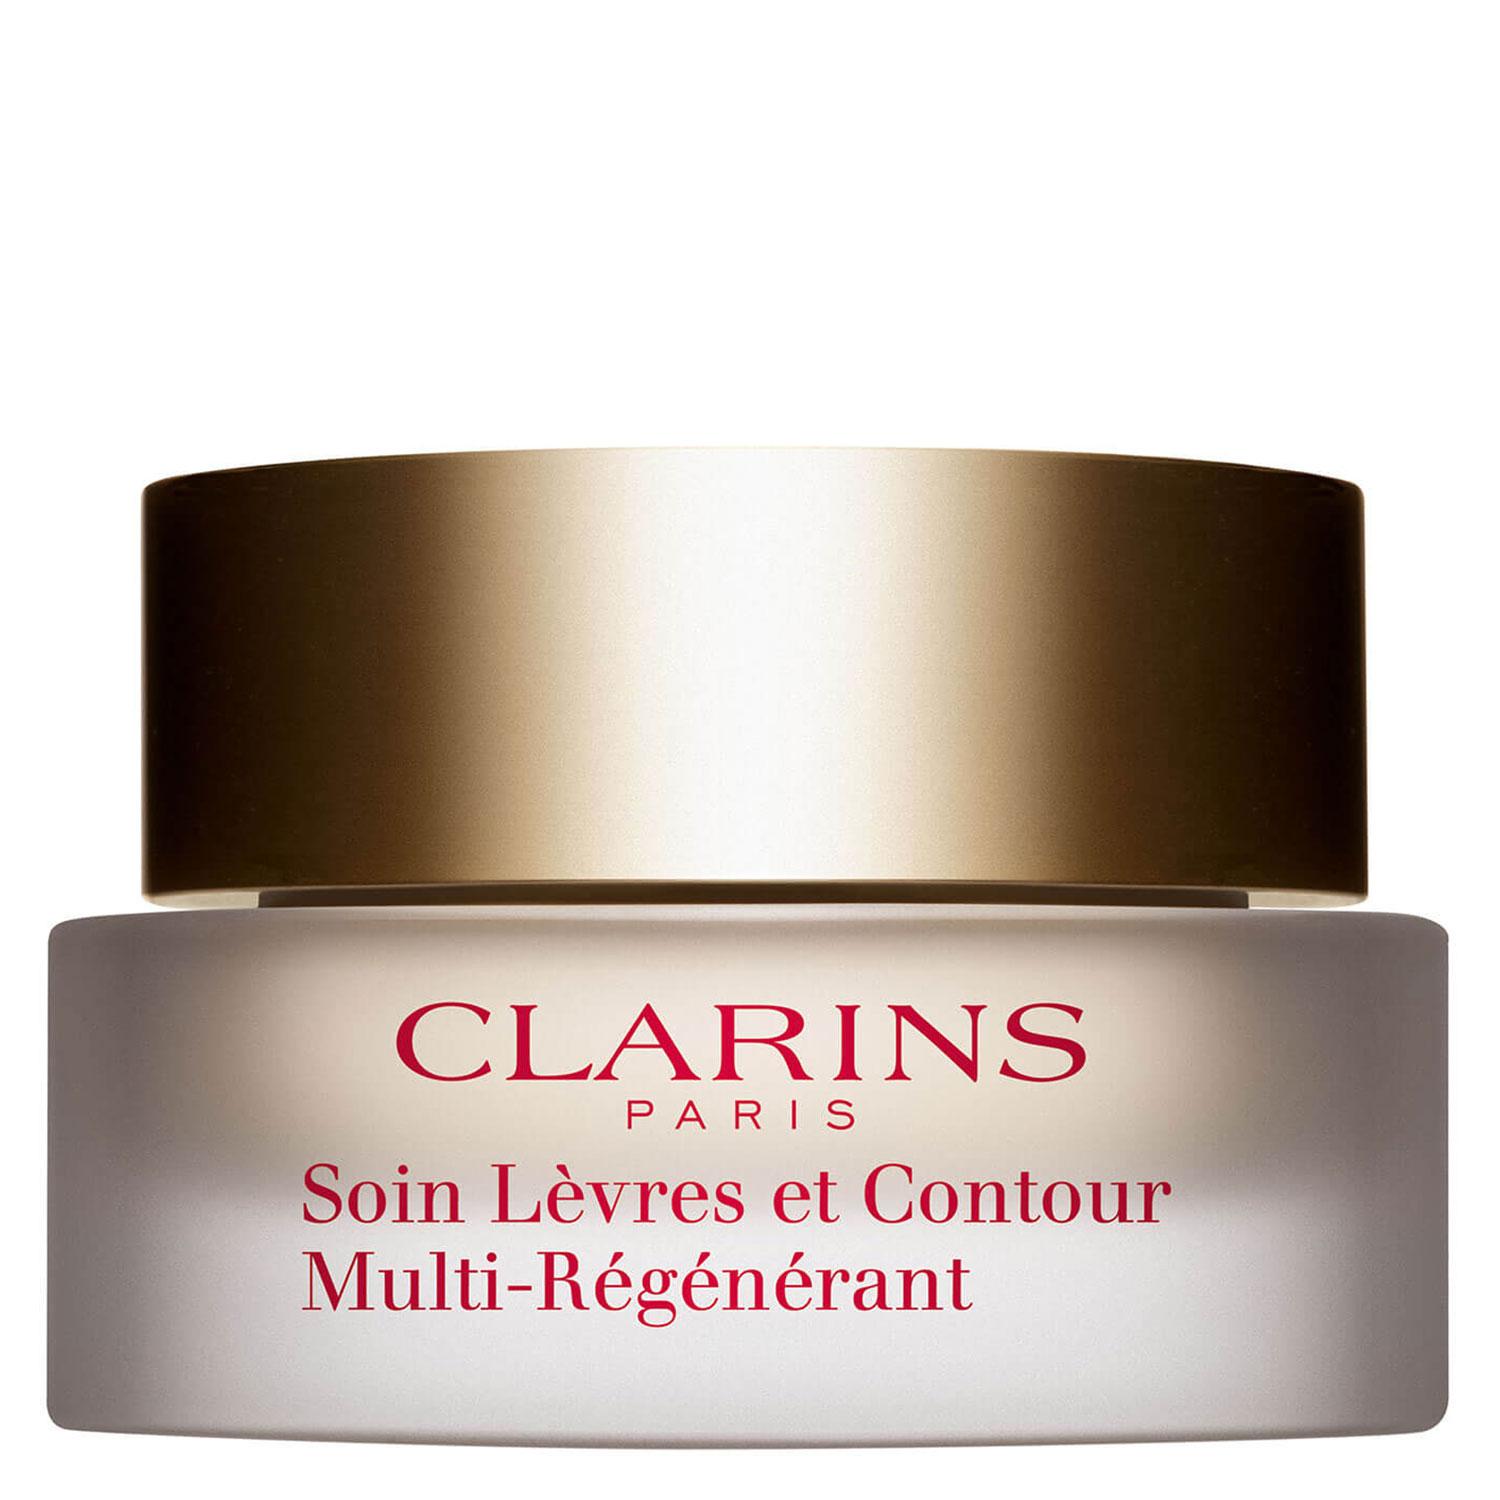 Clarins Skin - Soin Lèvres et Contour Multi-Régénérant